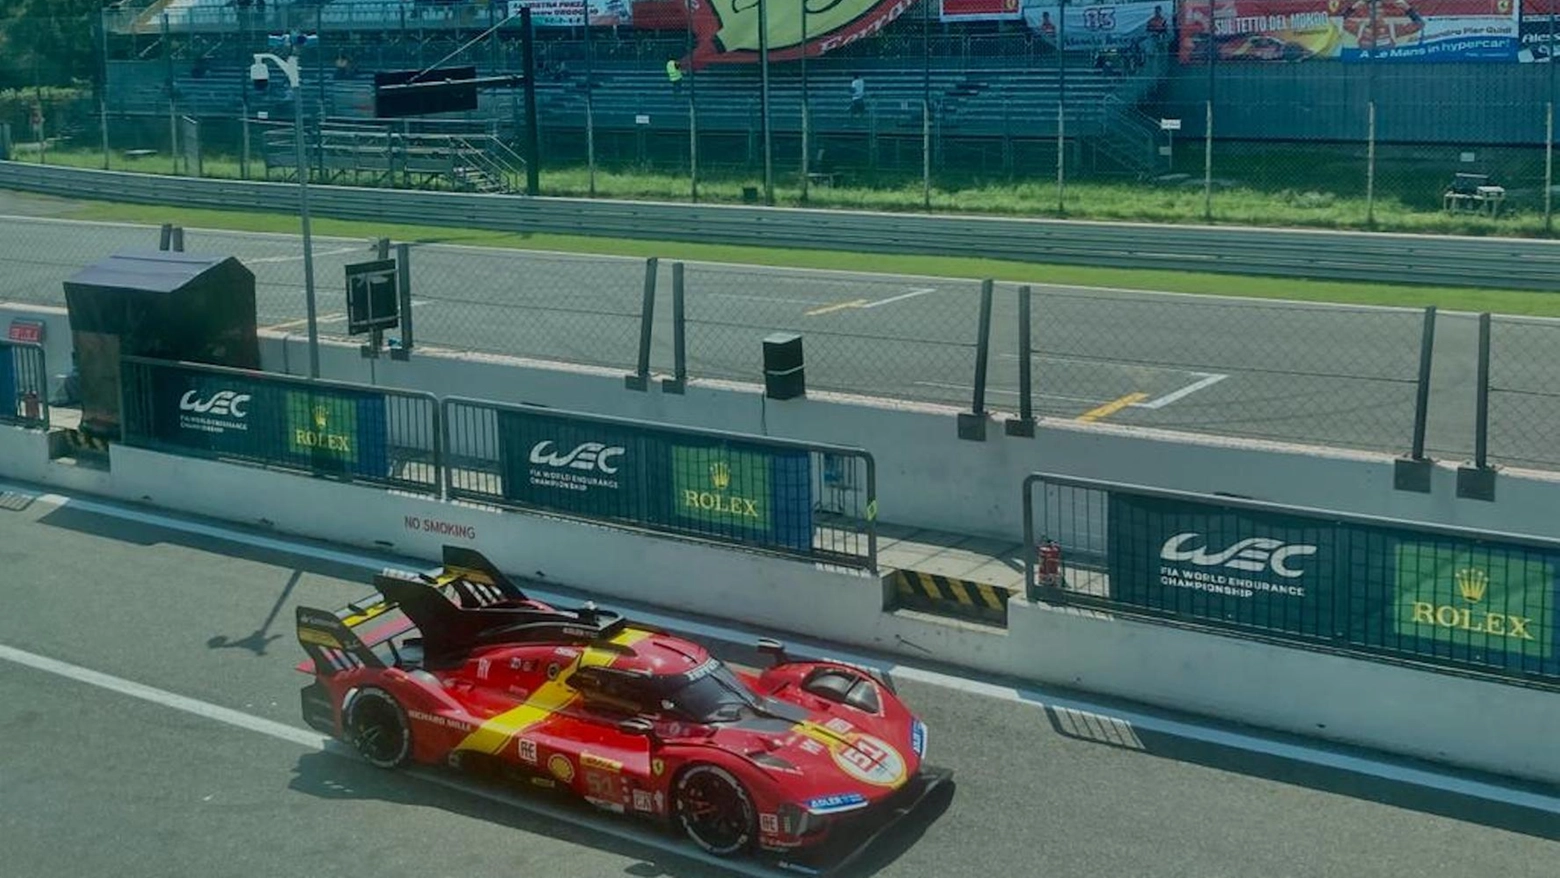 La hypercar della Ferrari sul circuito di Monza